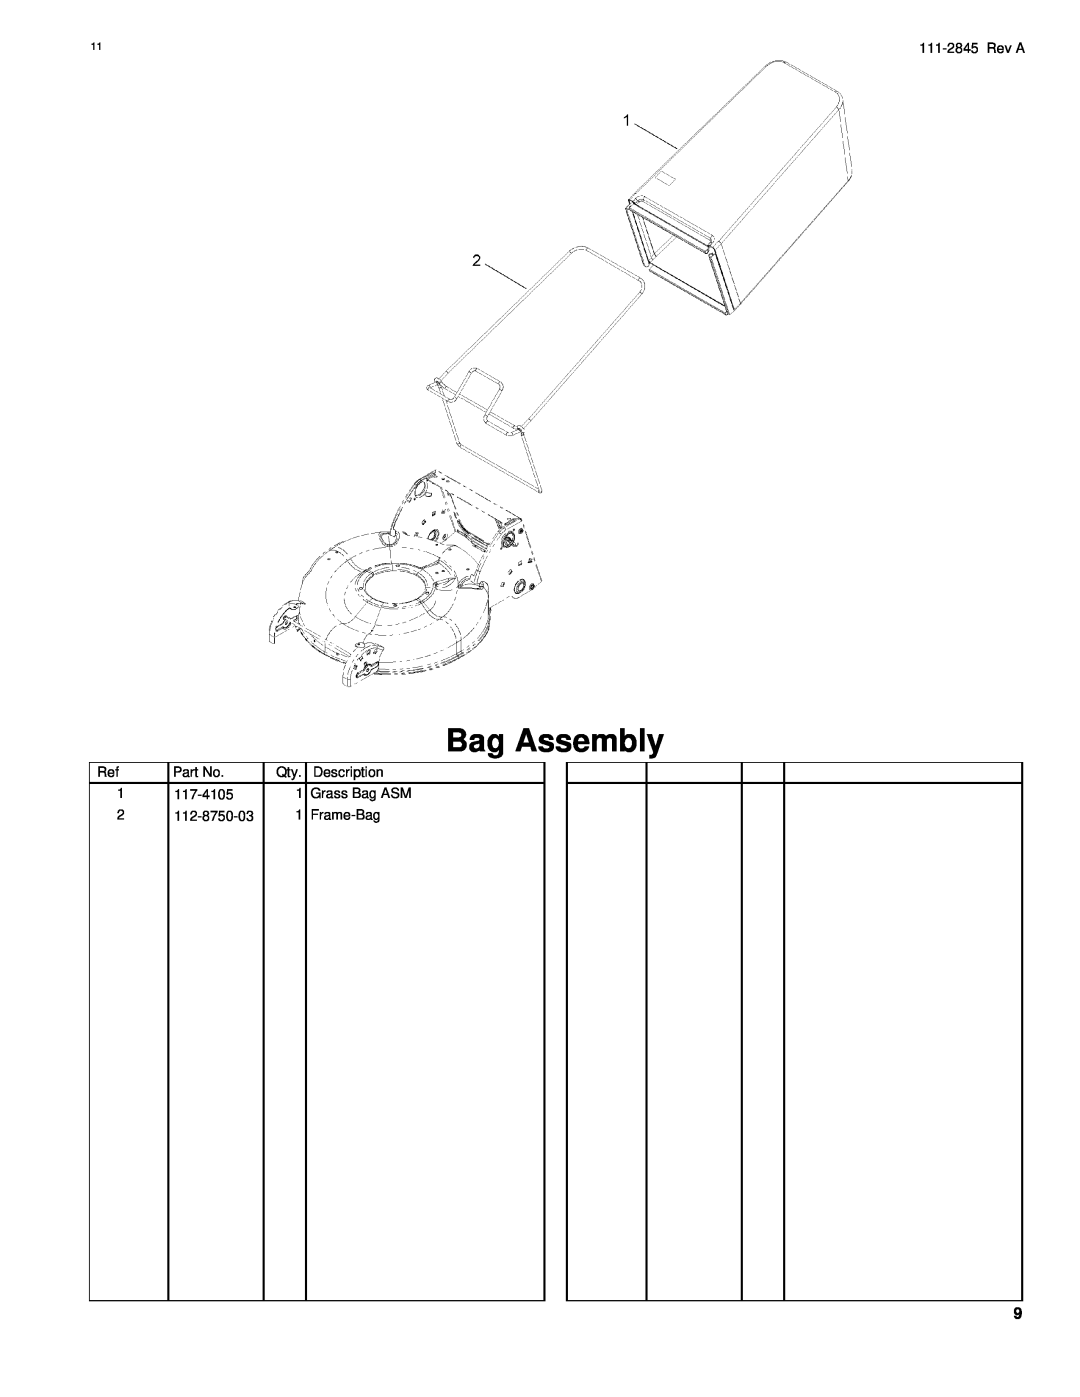 Hayter Mowers R53A Bag Assembly, 111-2845Rev A, Part No, Description, 117-4105, Grass Bag ASM, 112-8750-03, Frame-Bag 